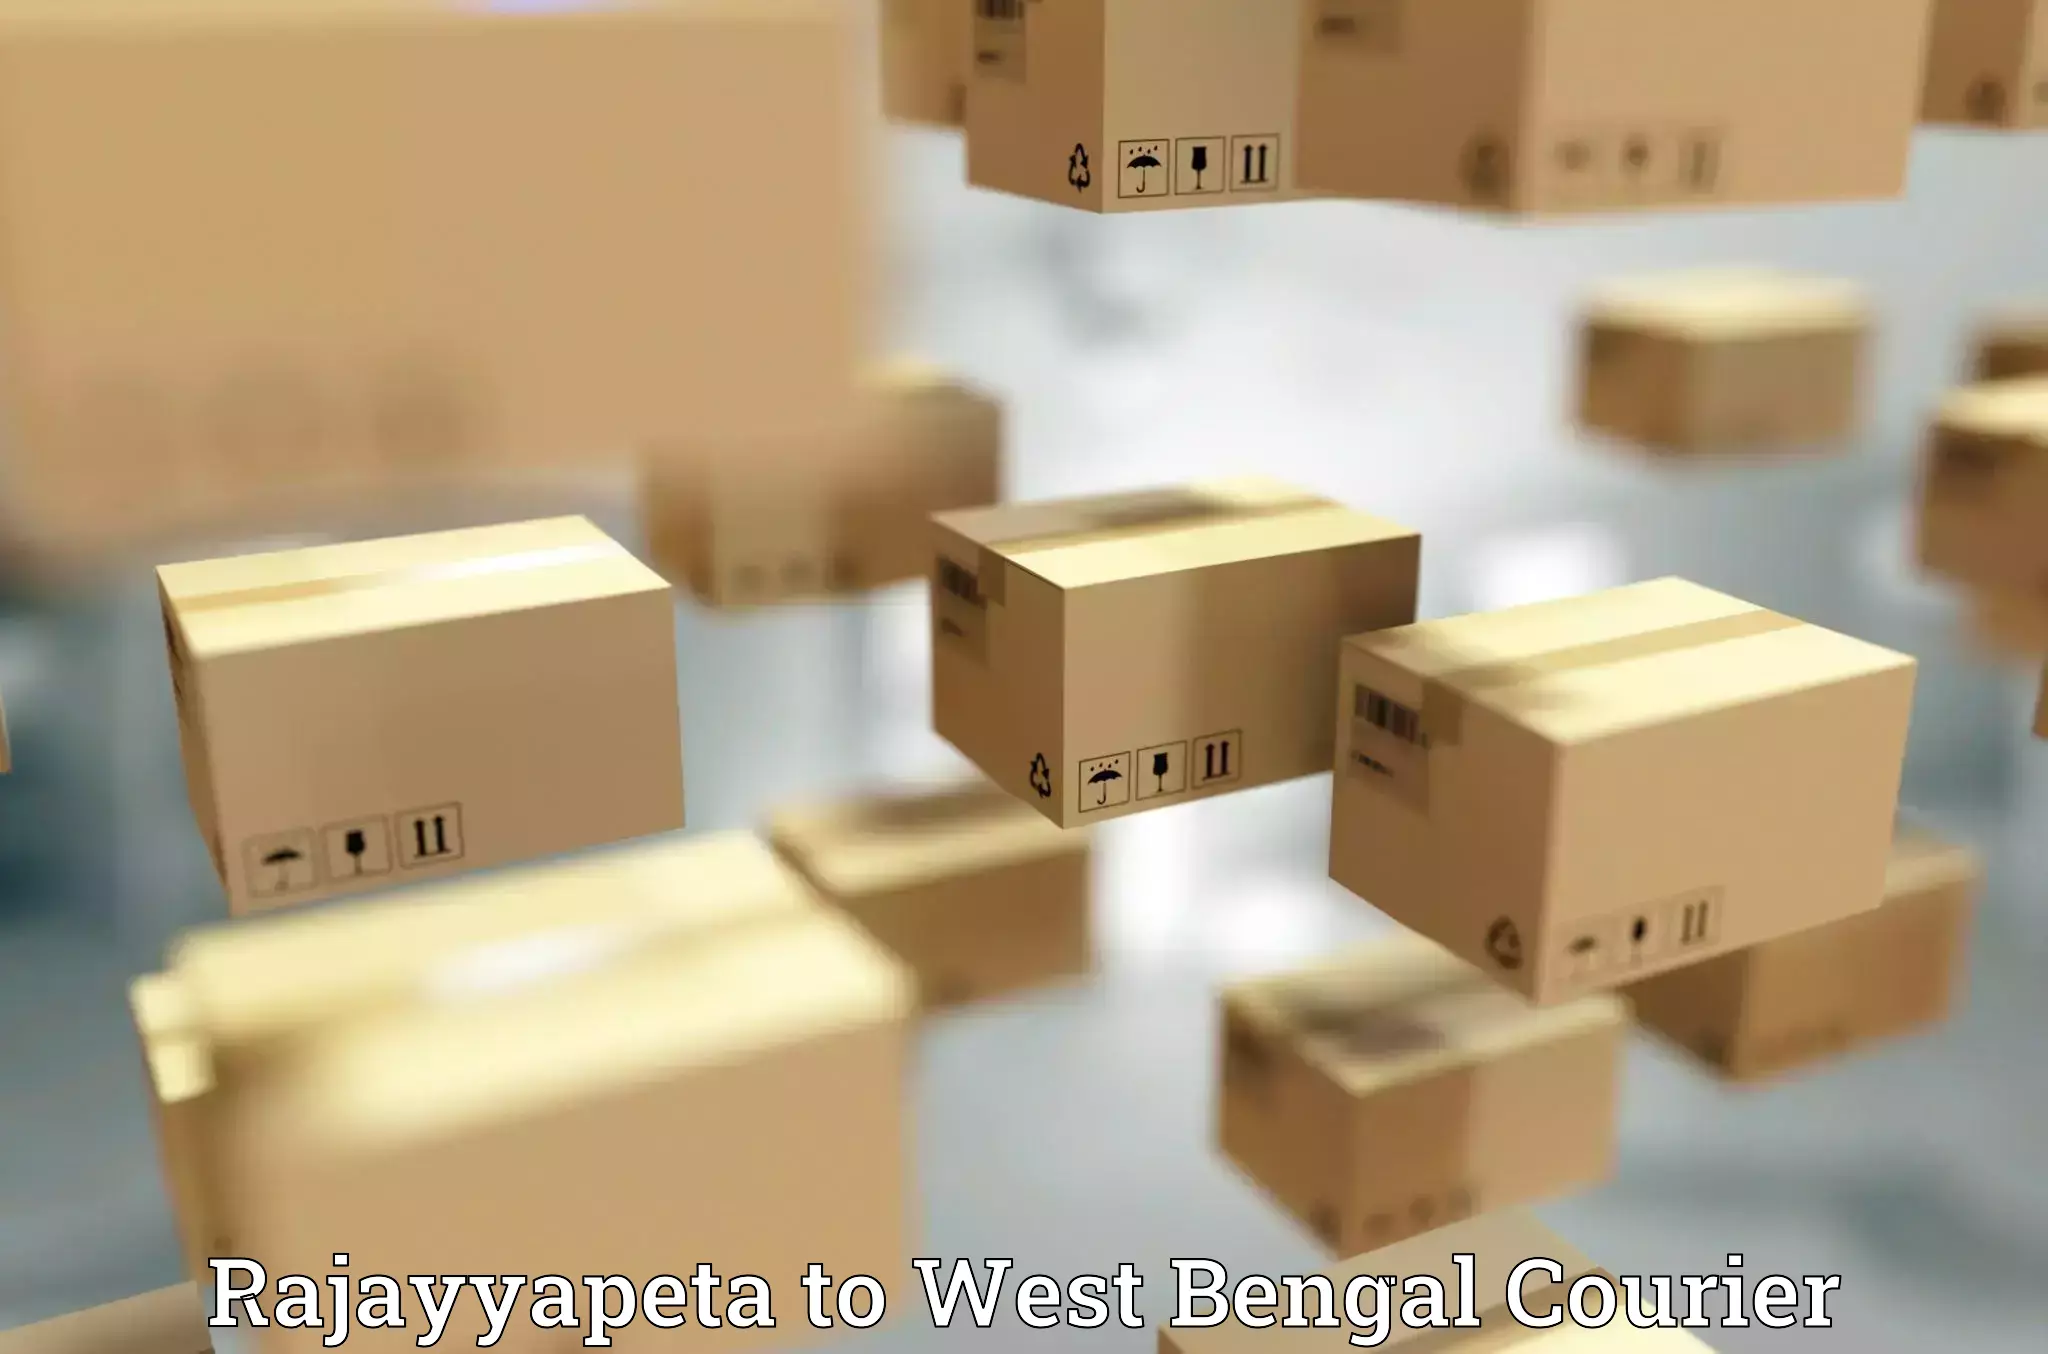 Luggage transport solutions Rajayyapeta to West Bengal